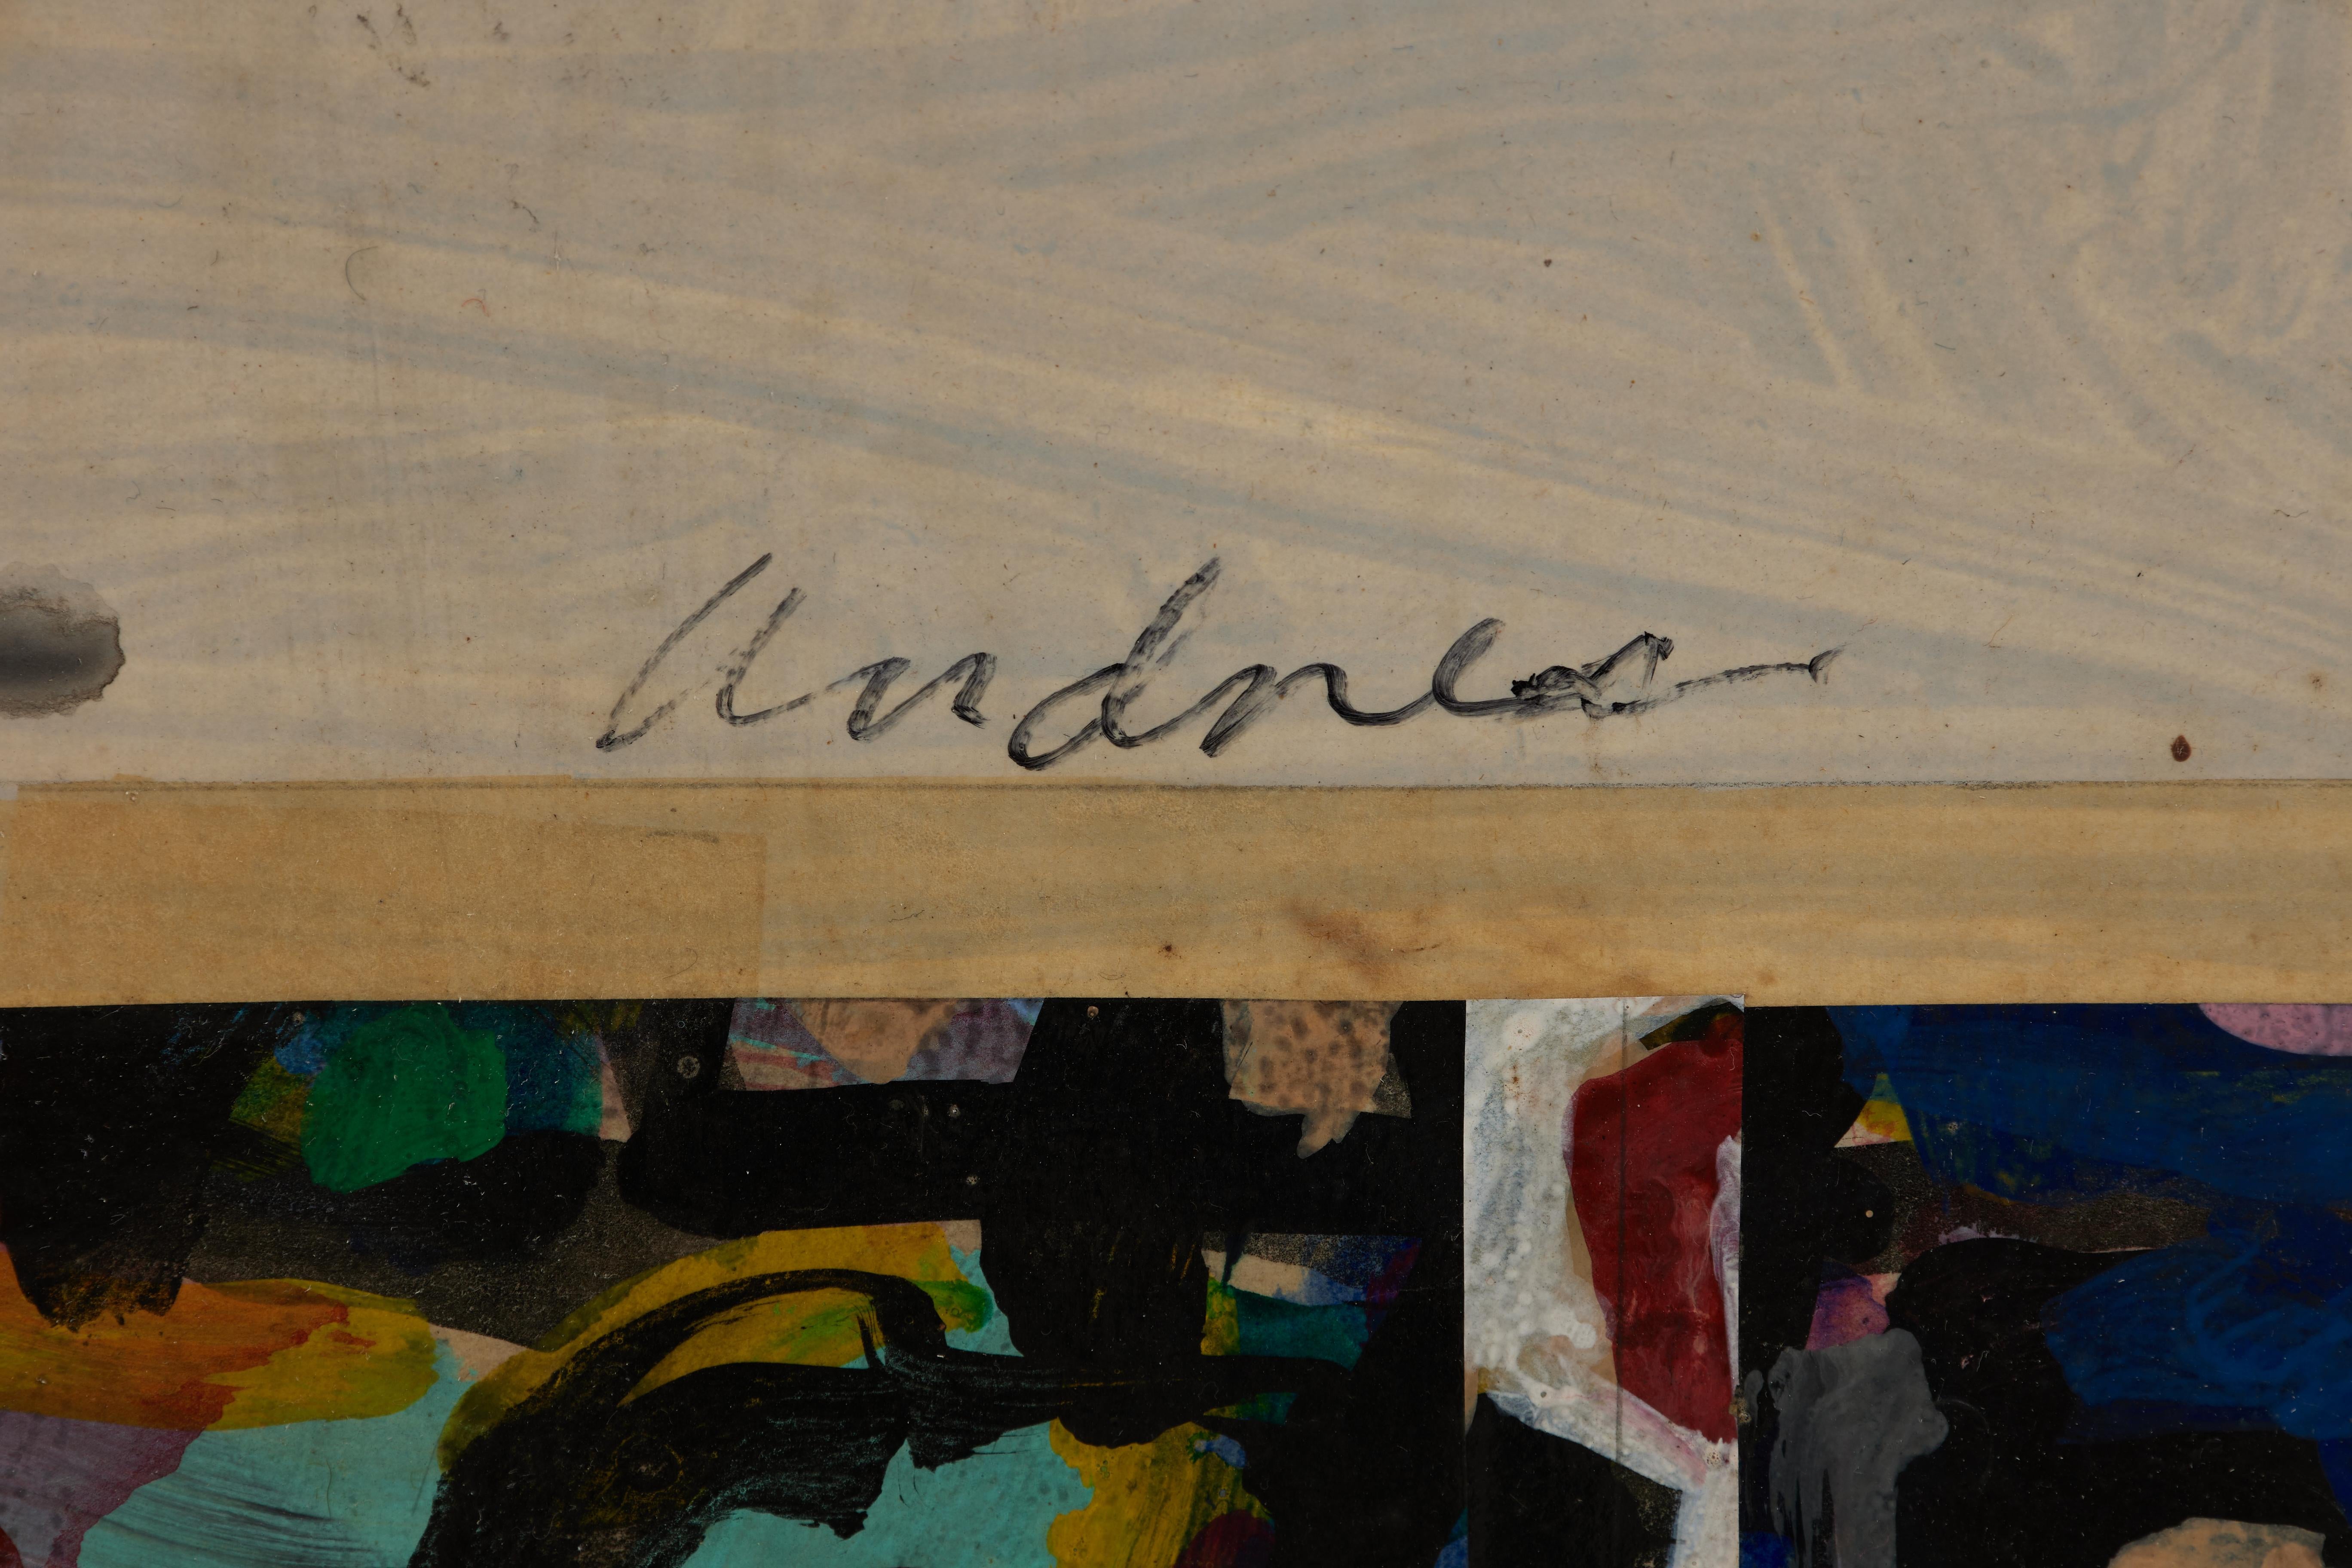 Richard Andre
Amerikaner, 1927-2013
Der Karokönig nimmt Herausforderungen an, 1982
Acryl und Tinte auf Papier auf Leinwand aufgezogen
signiert unten rechts, verso signiert und betitelt
47,5 x 47,5 Zoll
Ausgestellt: Das Cleveland Institute of Art: